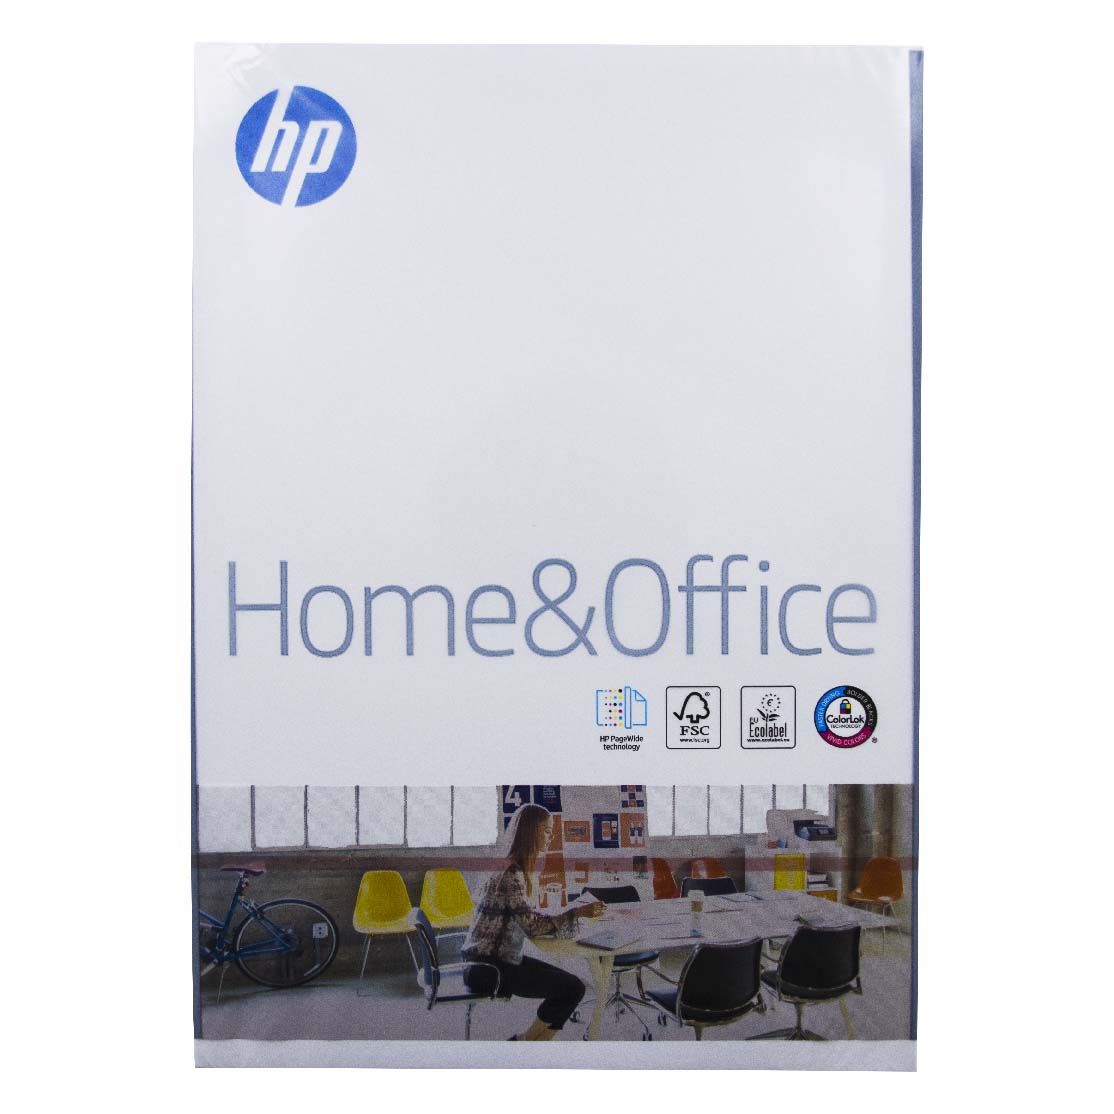 Kopierpapier HP Home A4 500 Blatt